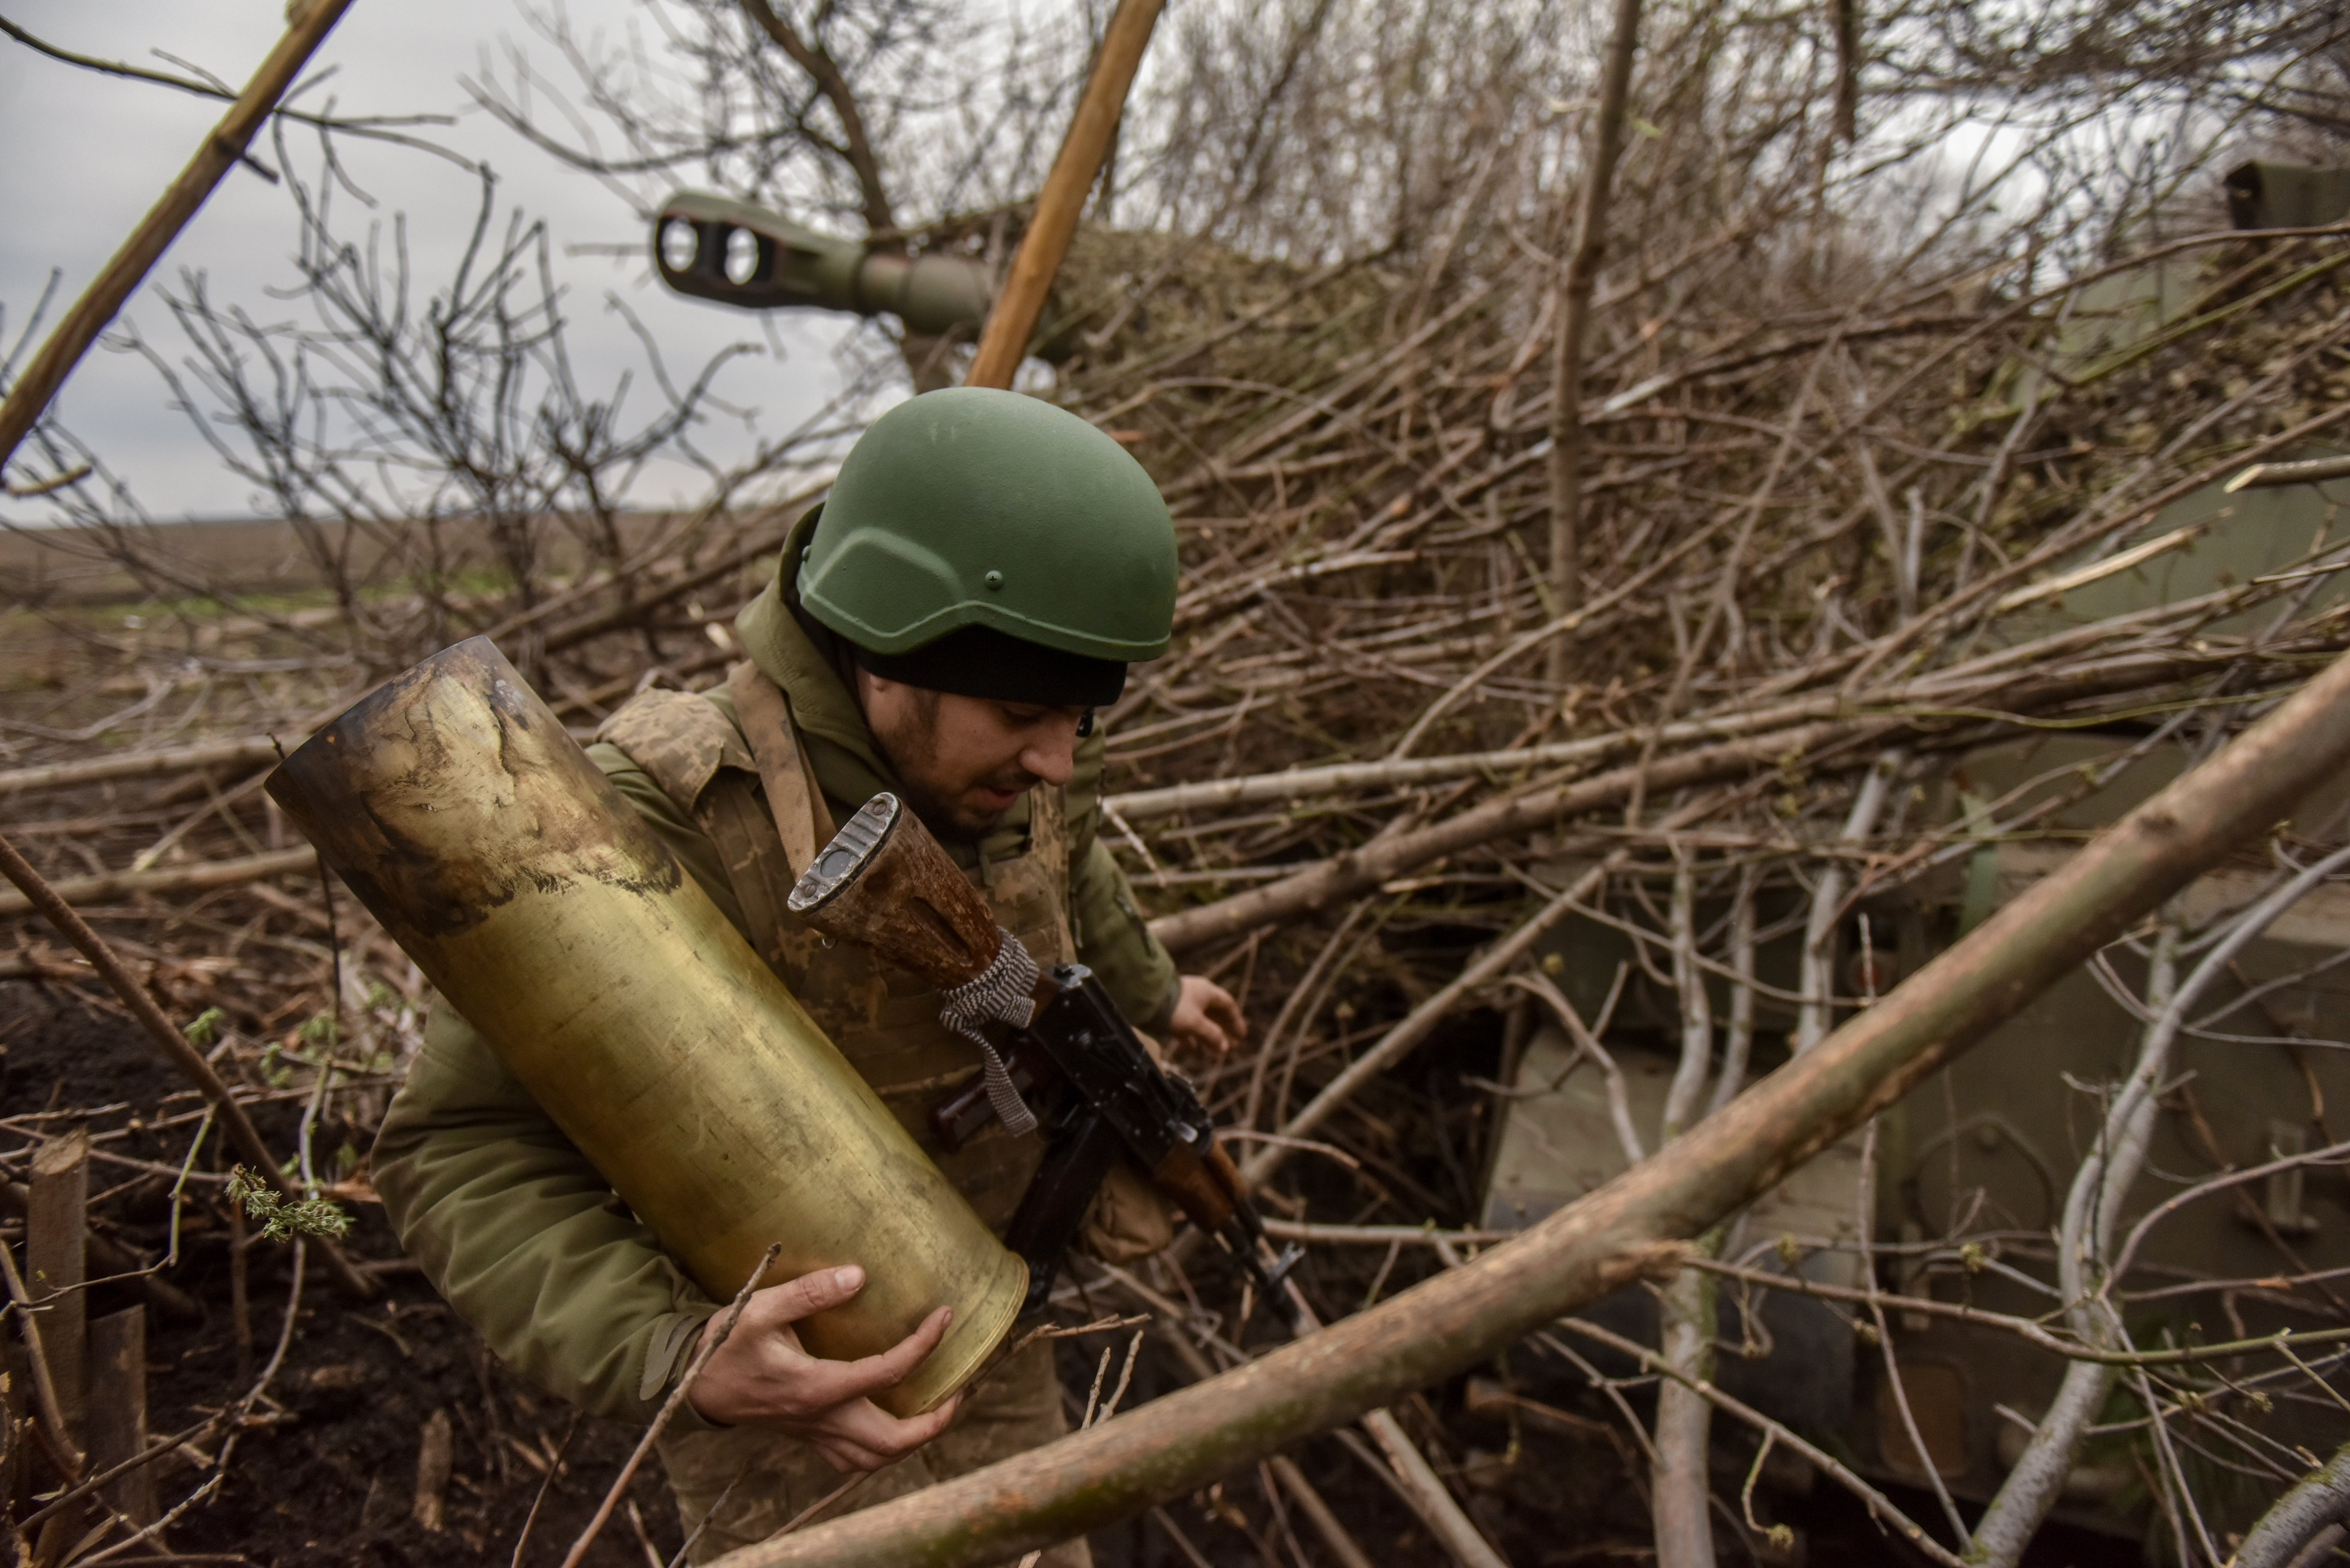 Llançar granades i tortures: un mercenari de Wagner explica què ha fet a Ucraïna